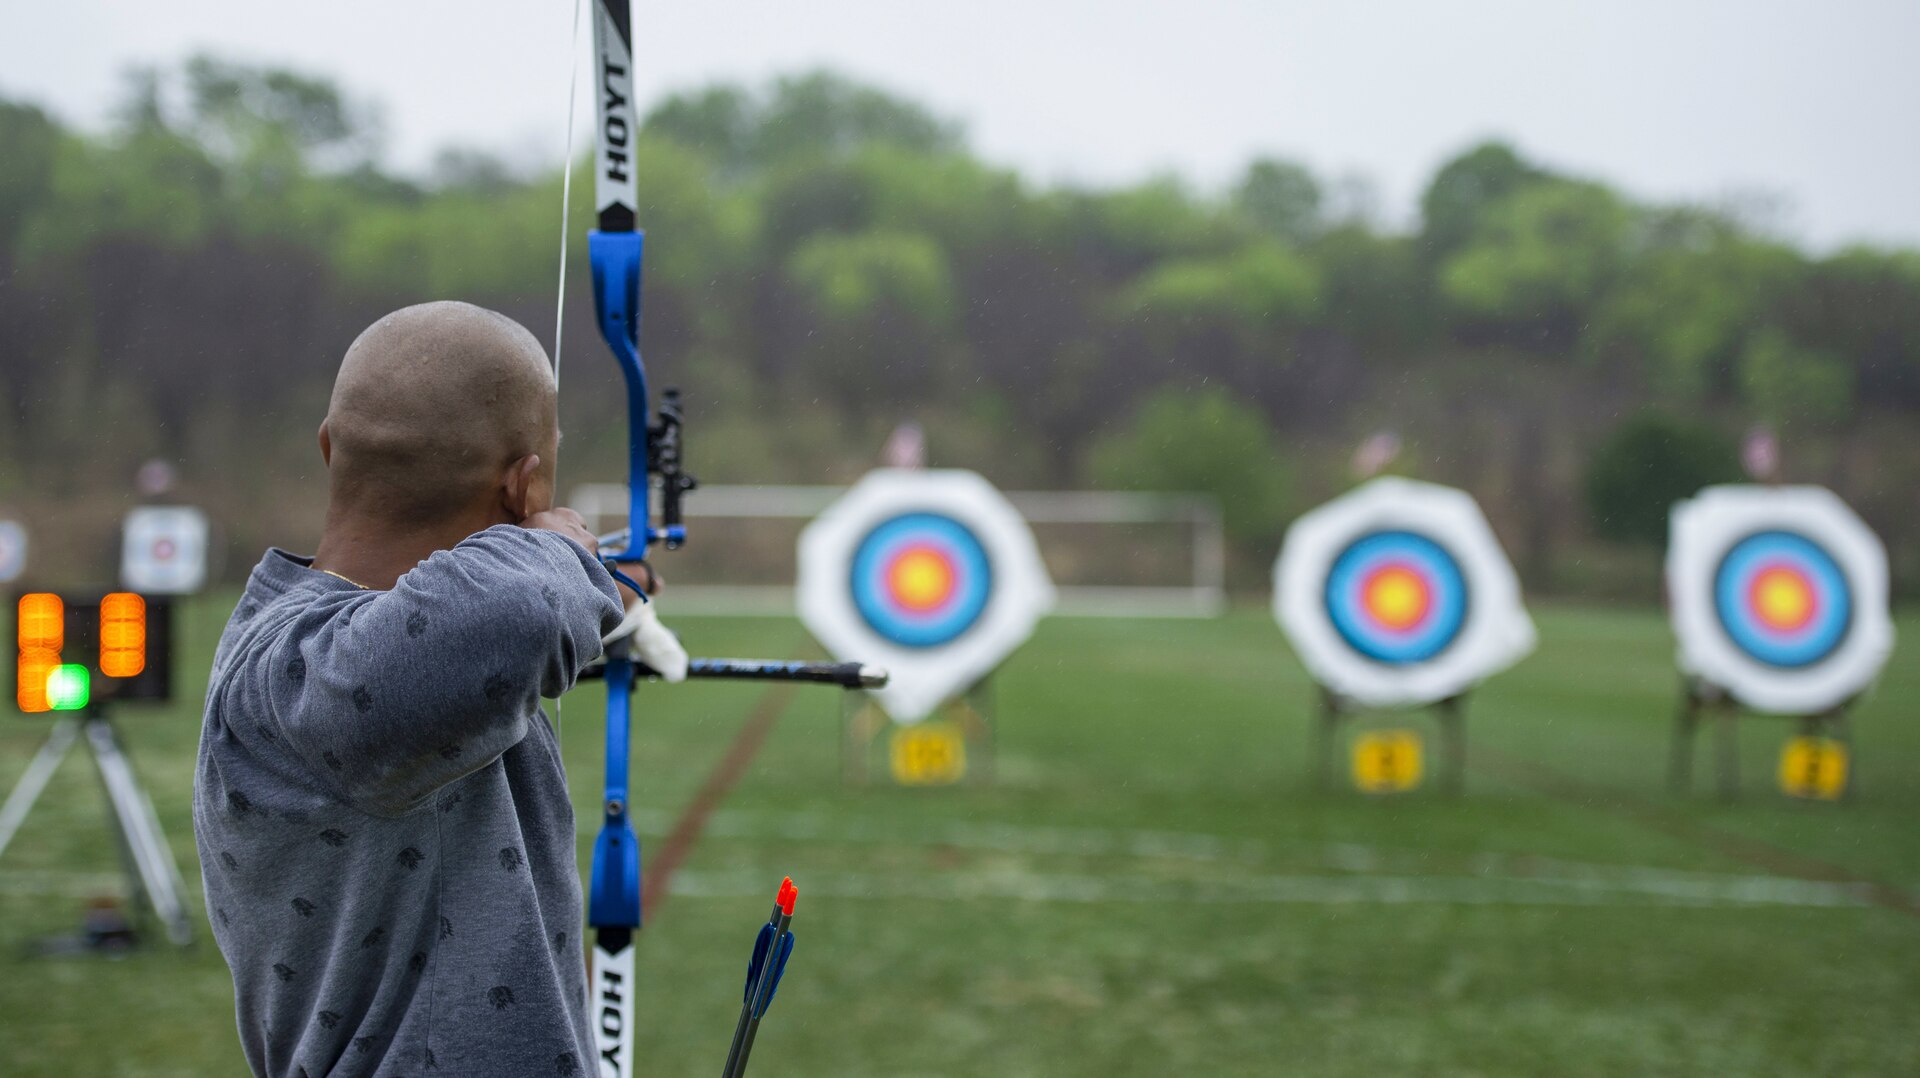 Man prepares to shoot arrow at target